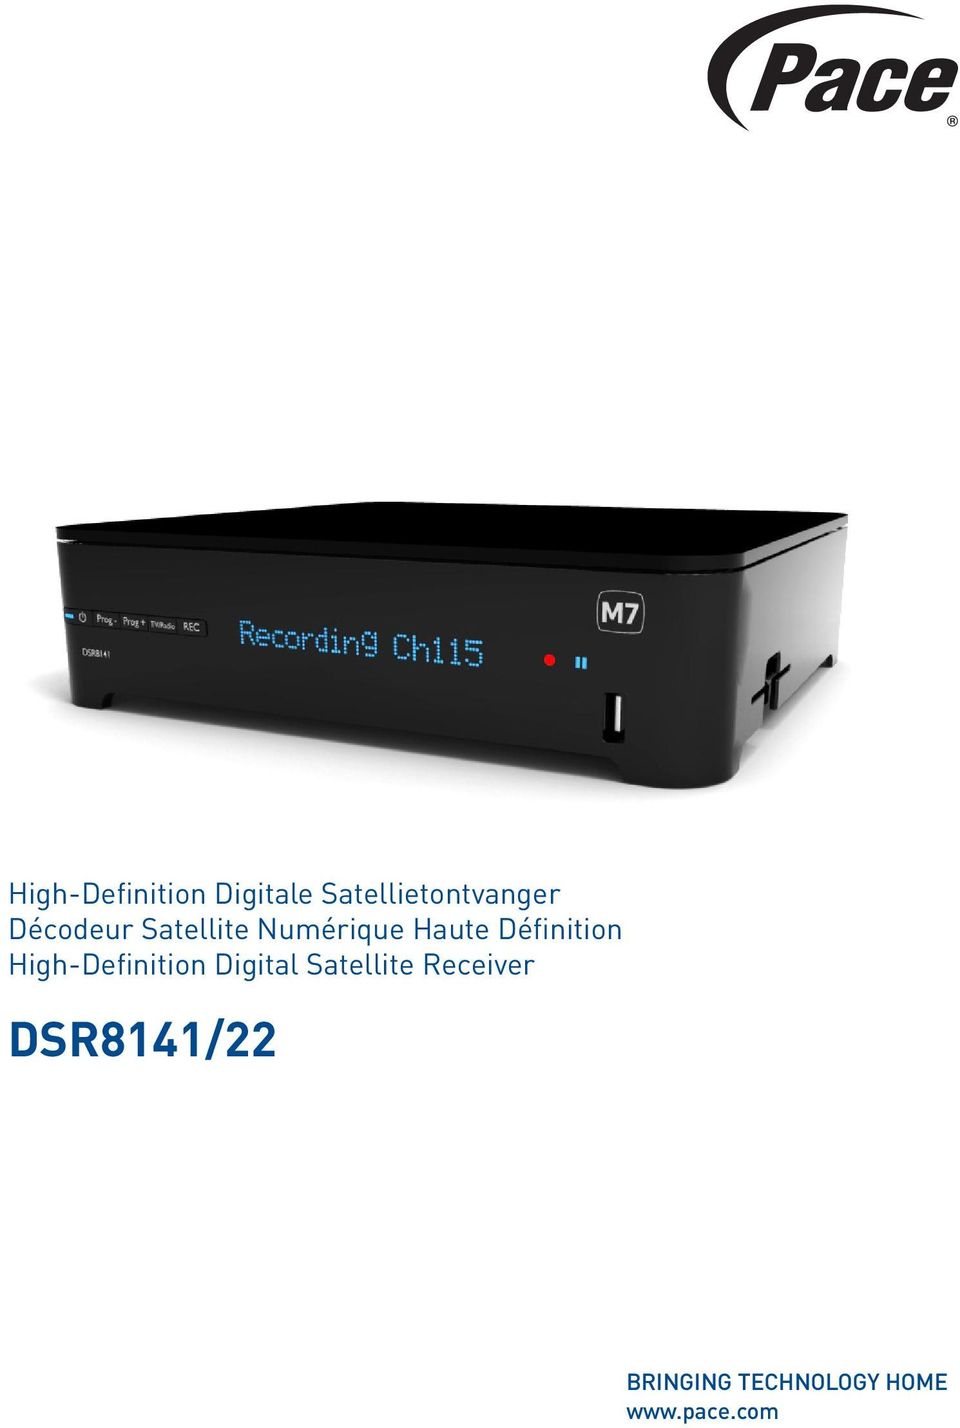 High-Definition Digital Satellite Receiver